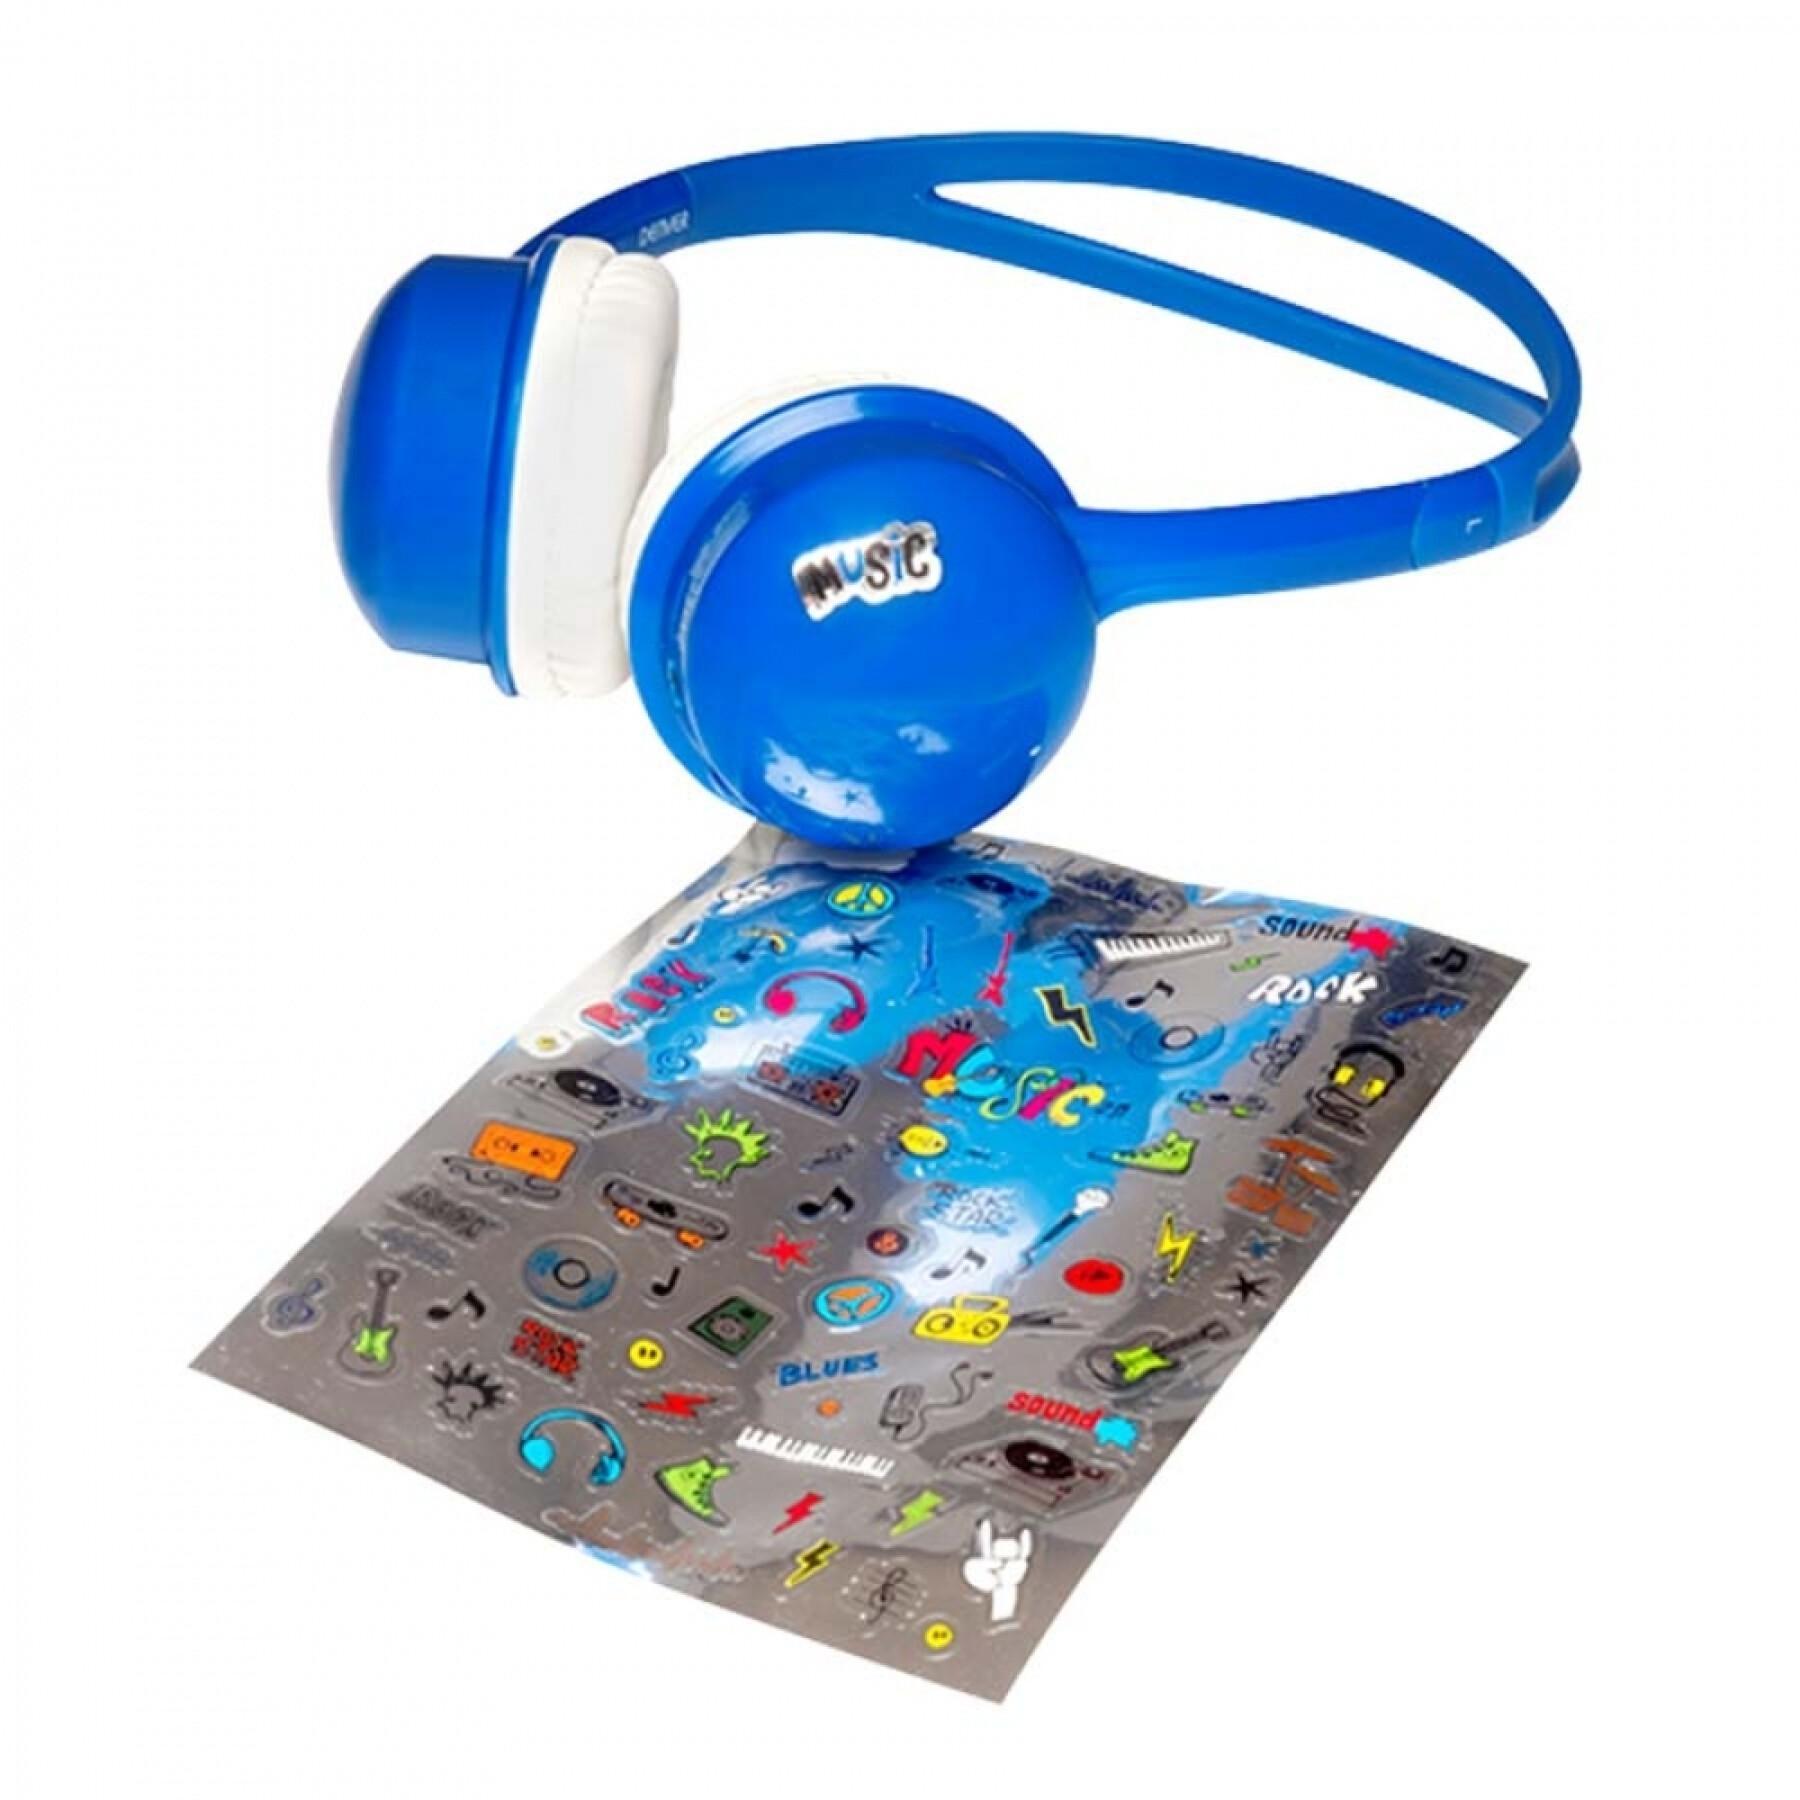 Trådlöst Bluetooth-headset för barn Denver